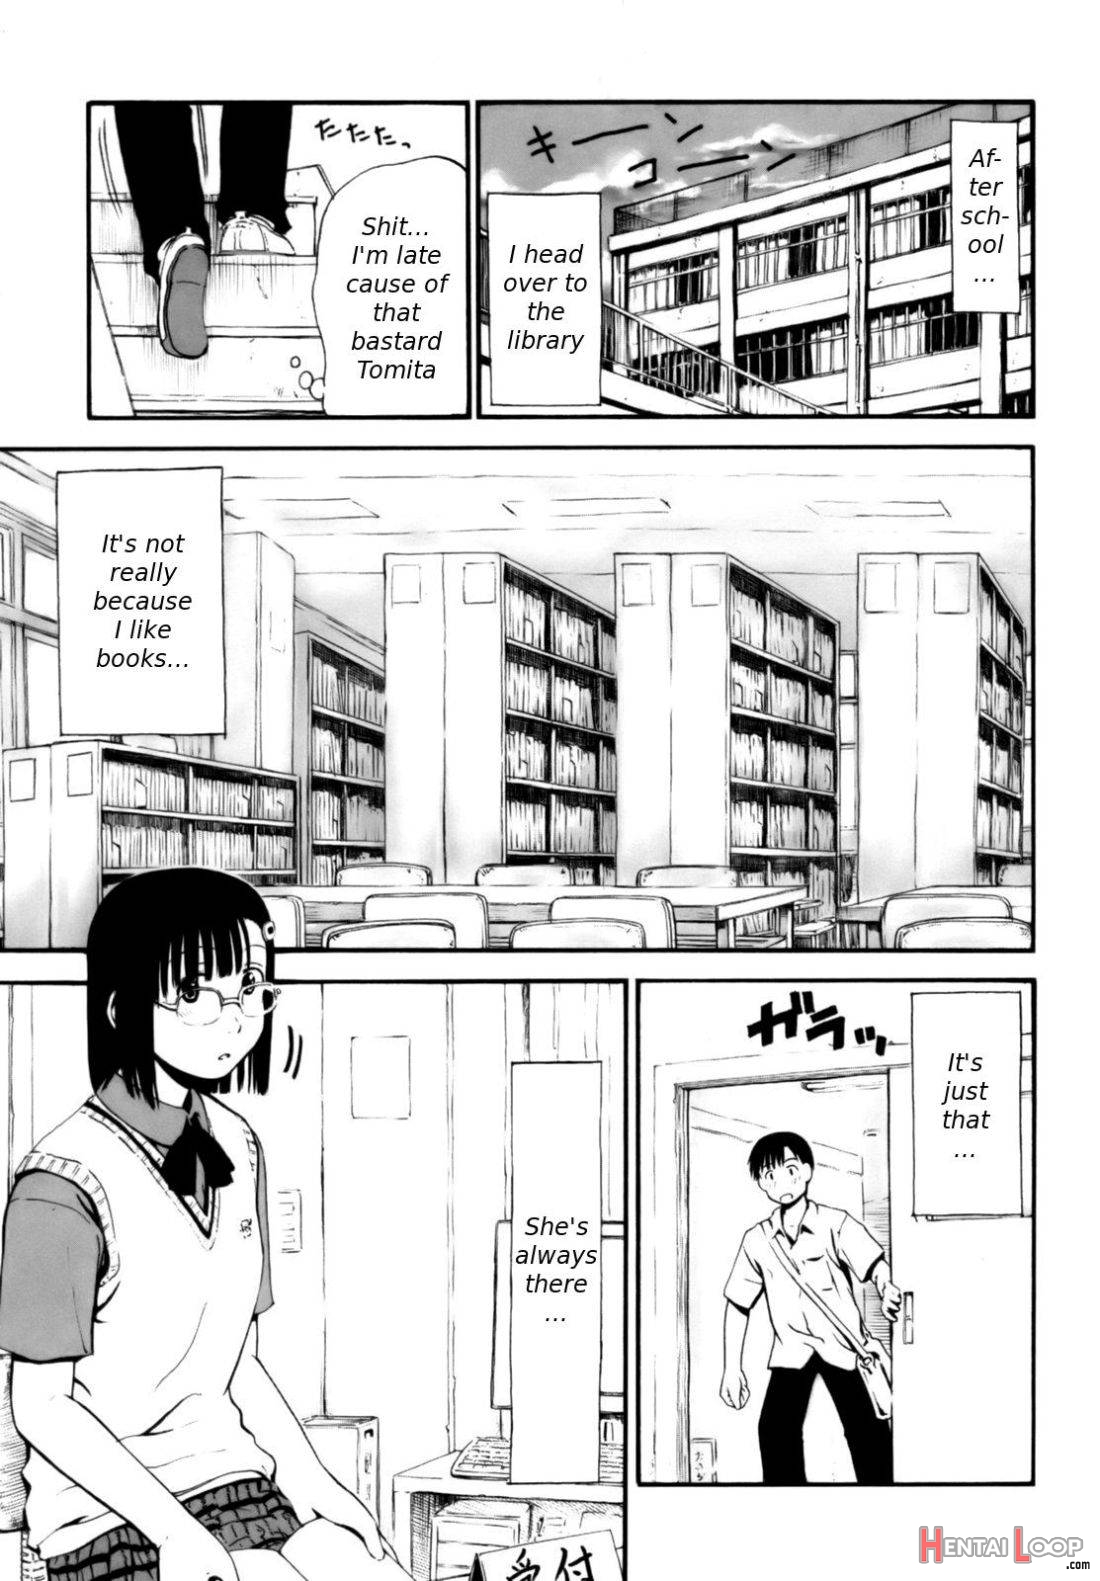 Nagano-san no ??? page 1